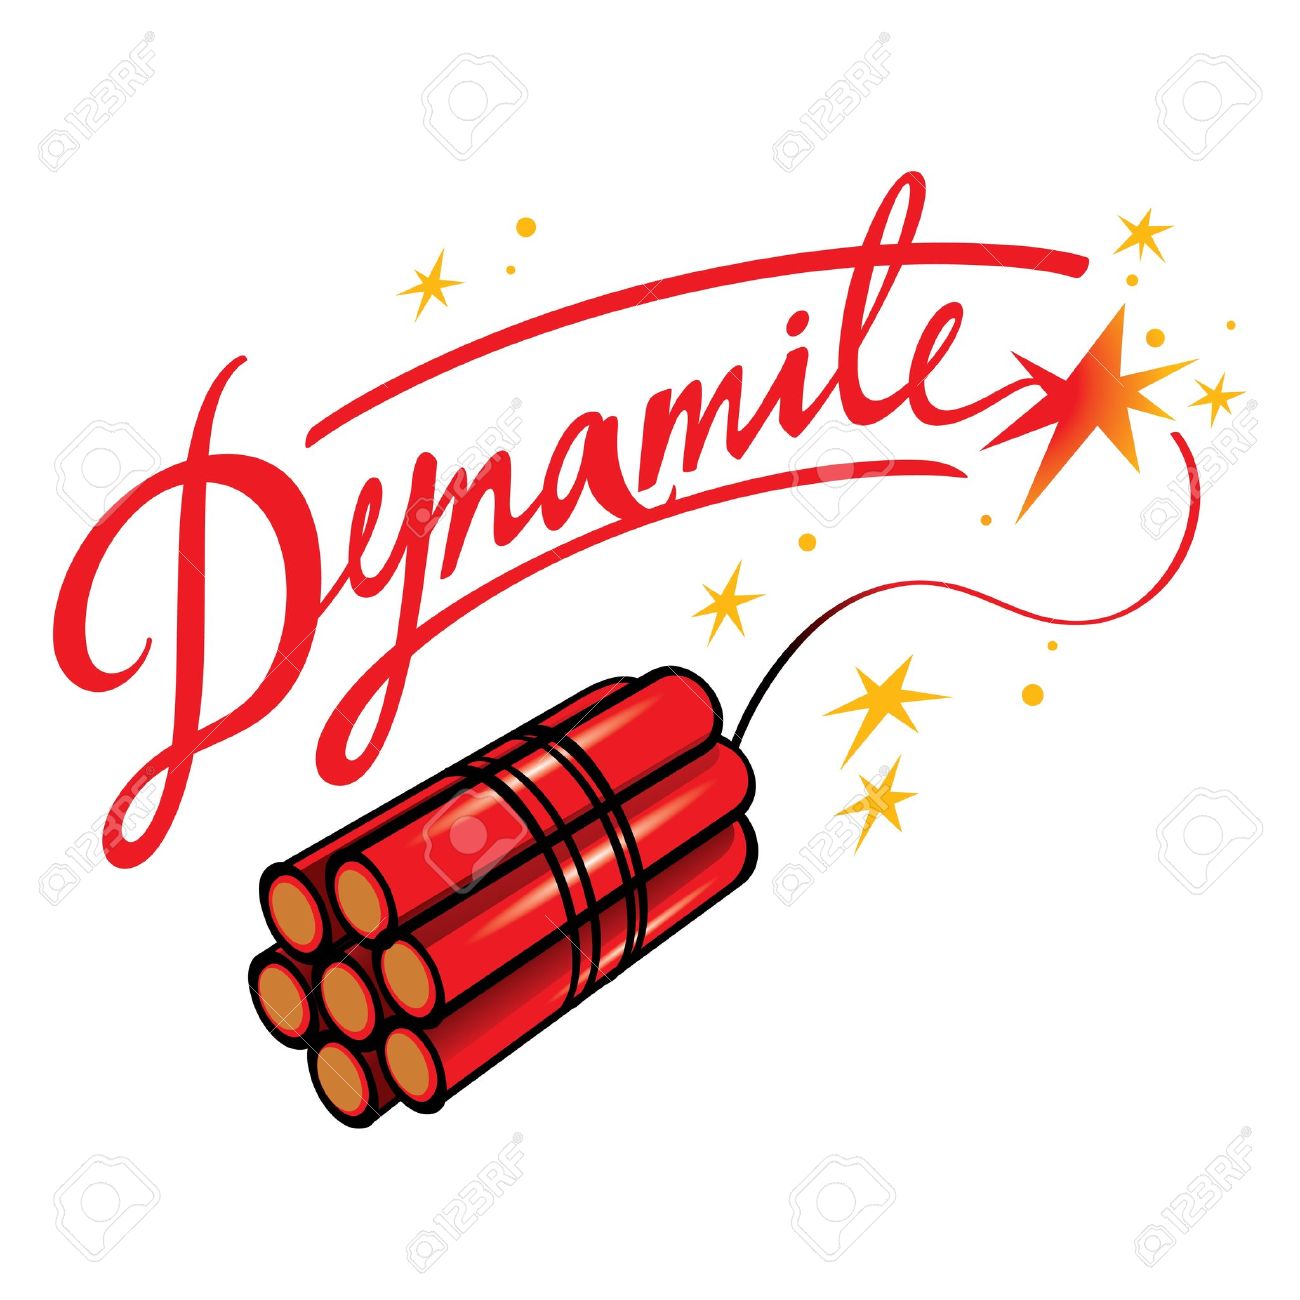 dynamite cartridge